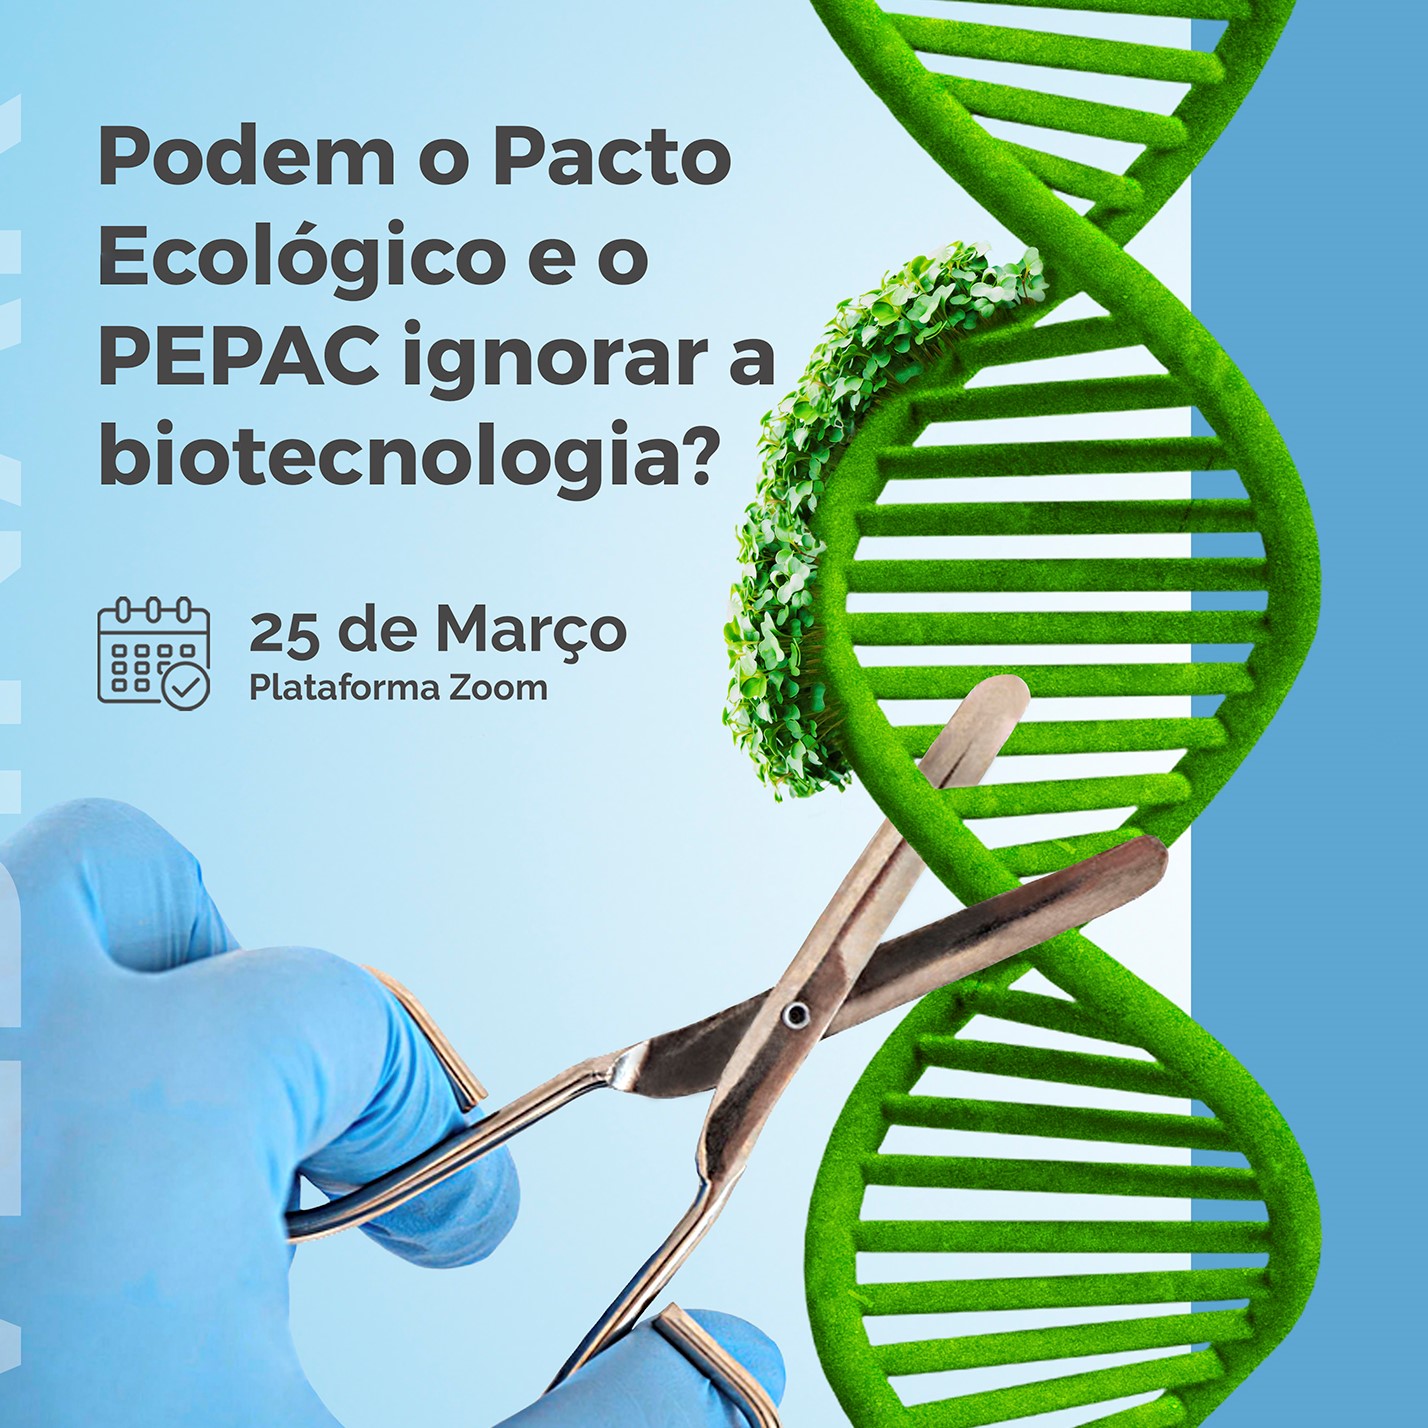 Pacto Ecológico e PEPAC - Biotecnologia